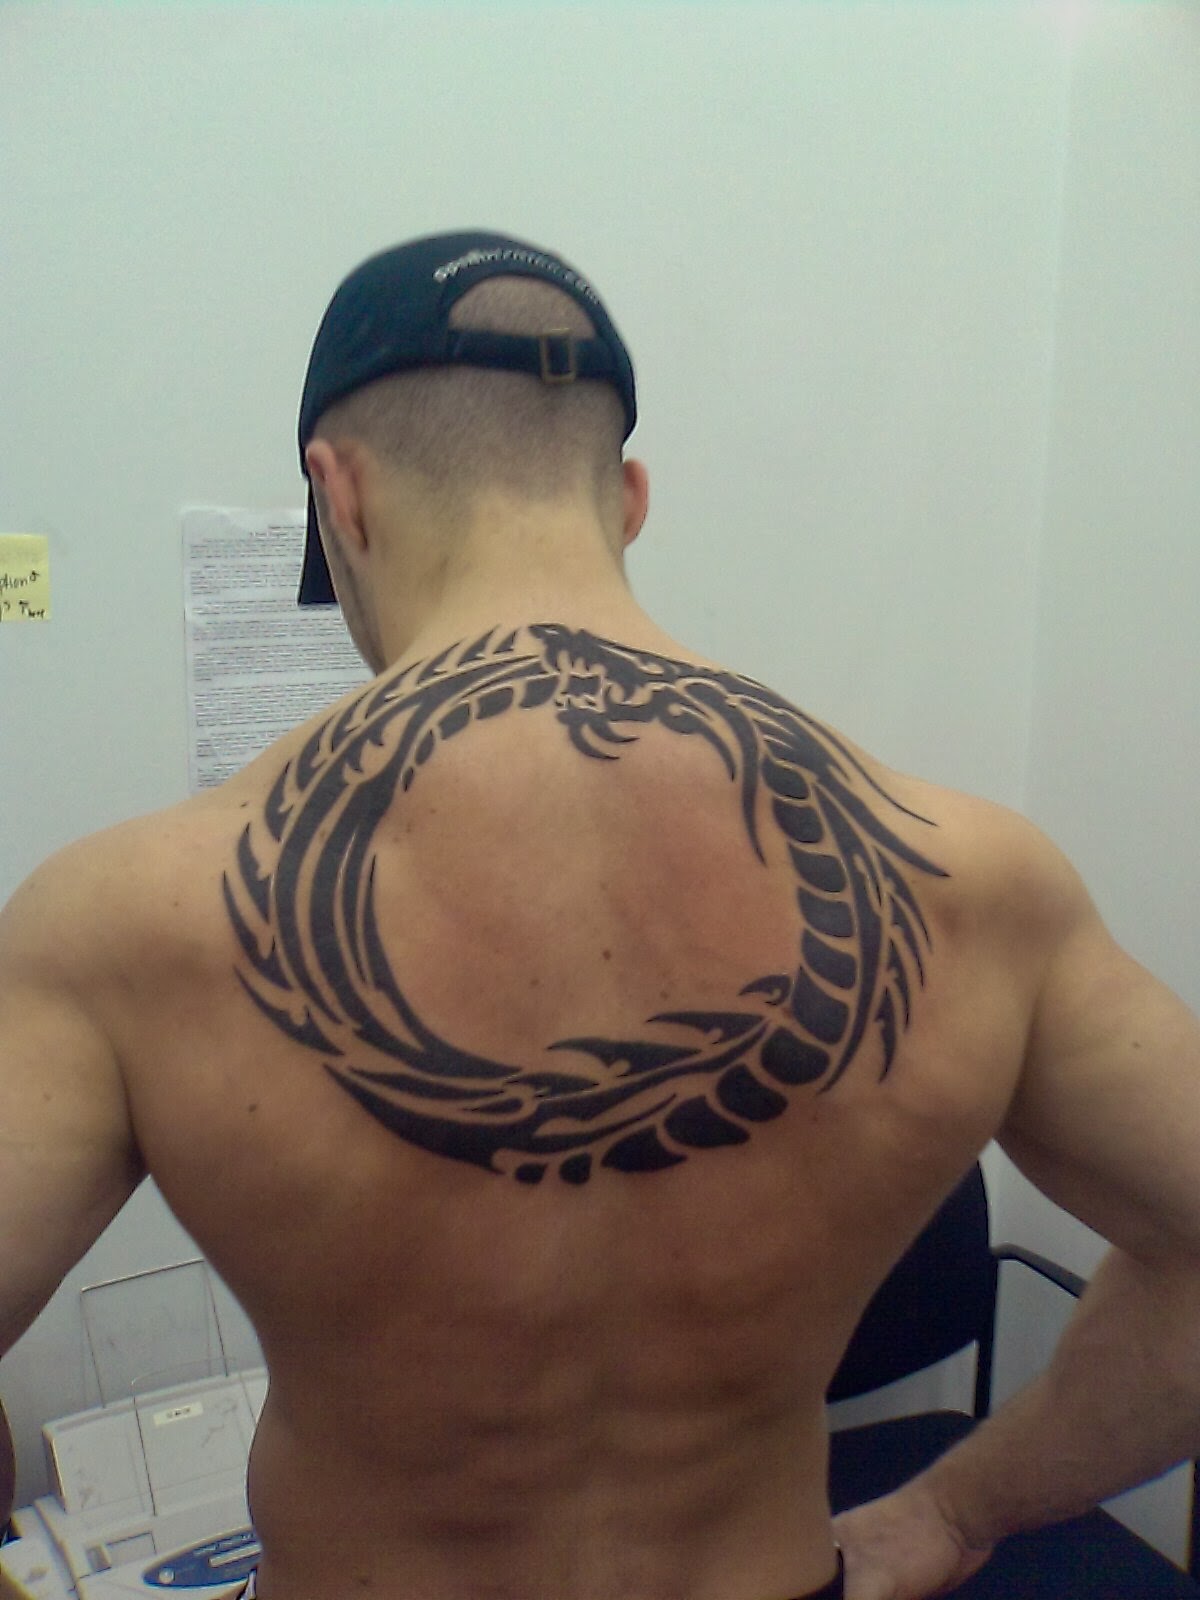 Tattooz Designs: Back Tattoo Ideas| Tattoo Ideas for Back| Back Tattoo